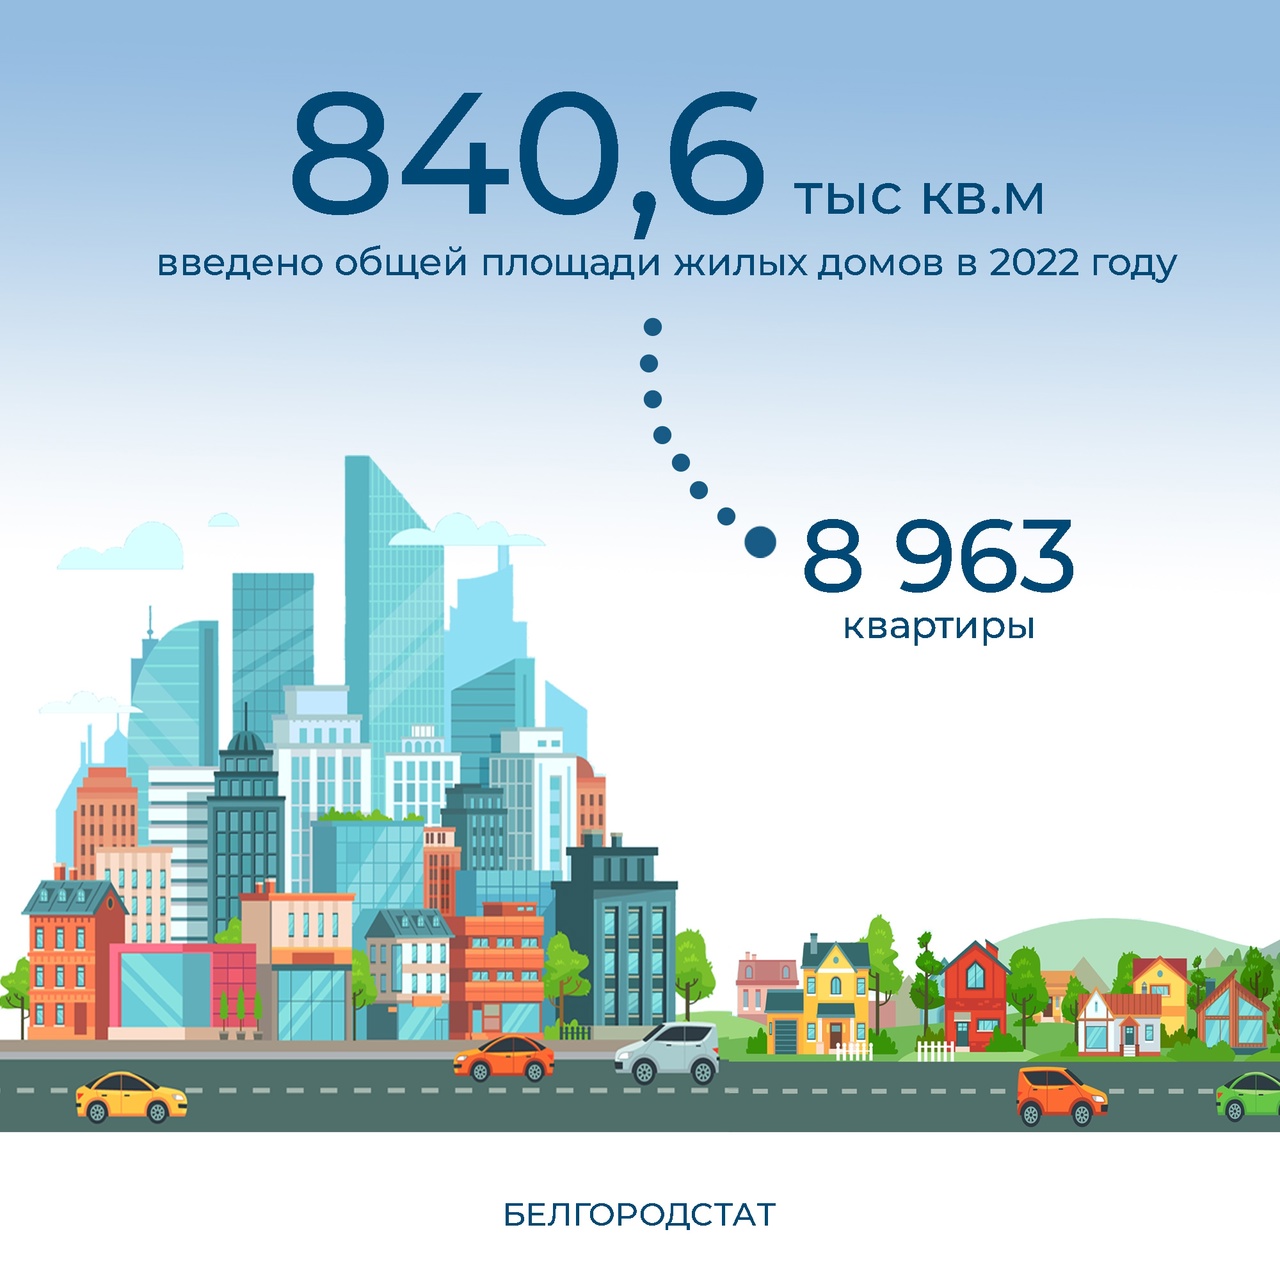 В 2022 году в Белгородской области построено 5426 жилых домов.